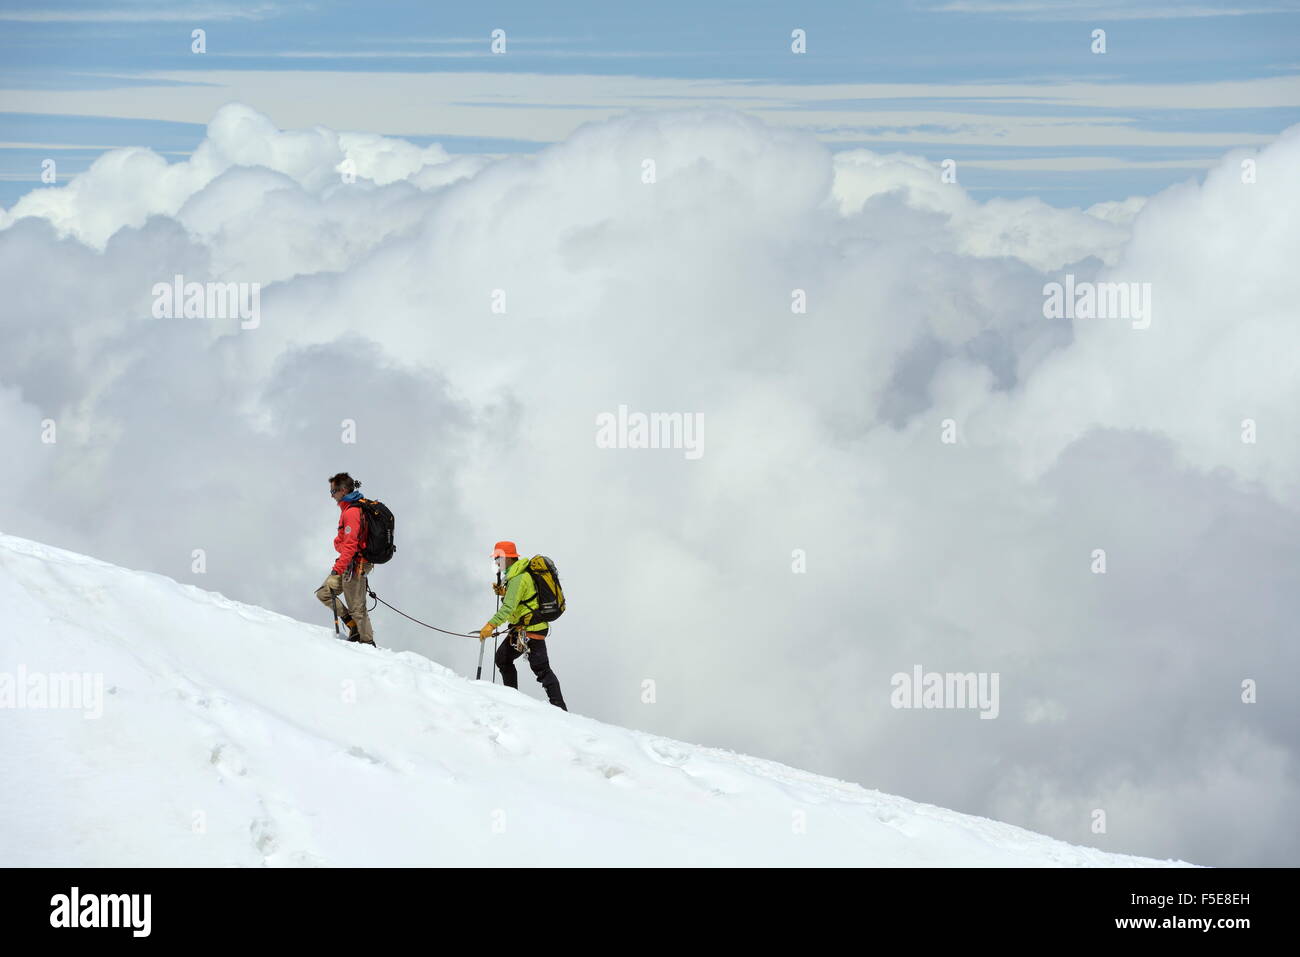 Los montañistas, escaladores en lo alto de las nubes, la Aiguille du Midi, el macizo del Mont Blanc, Chamonix, Haute Savoie, Alpes franceses, Francia Foto de stock